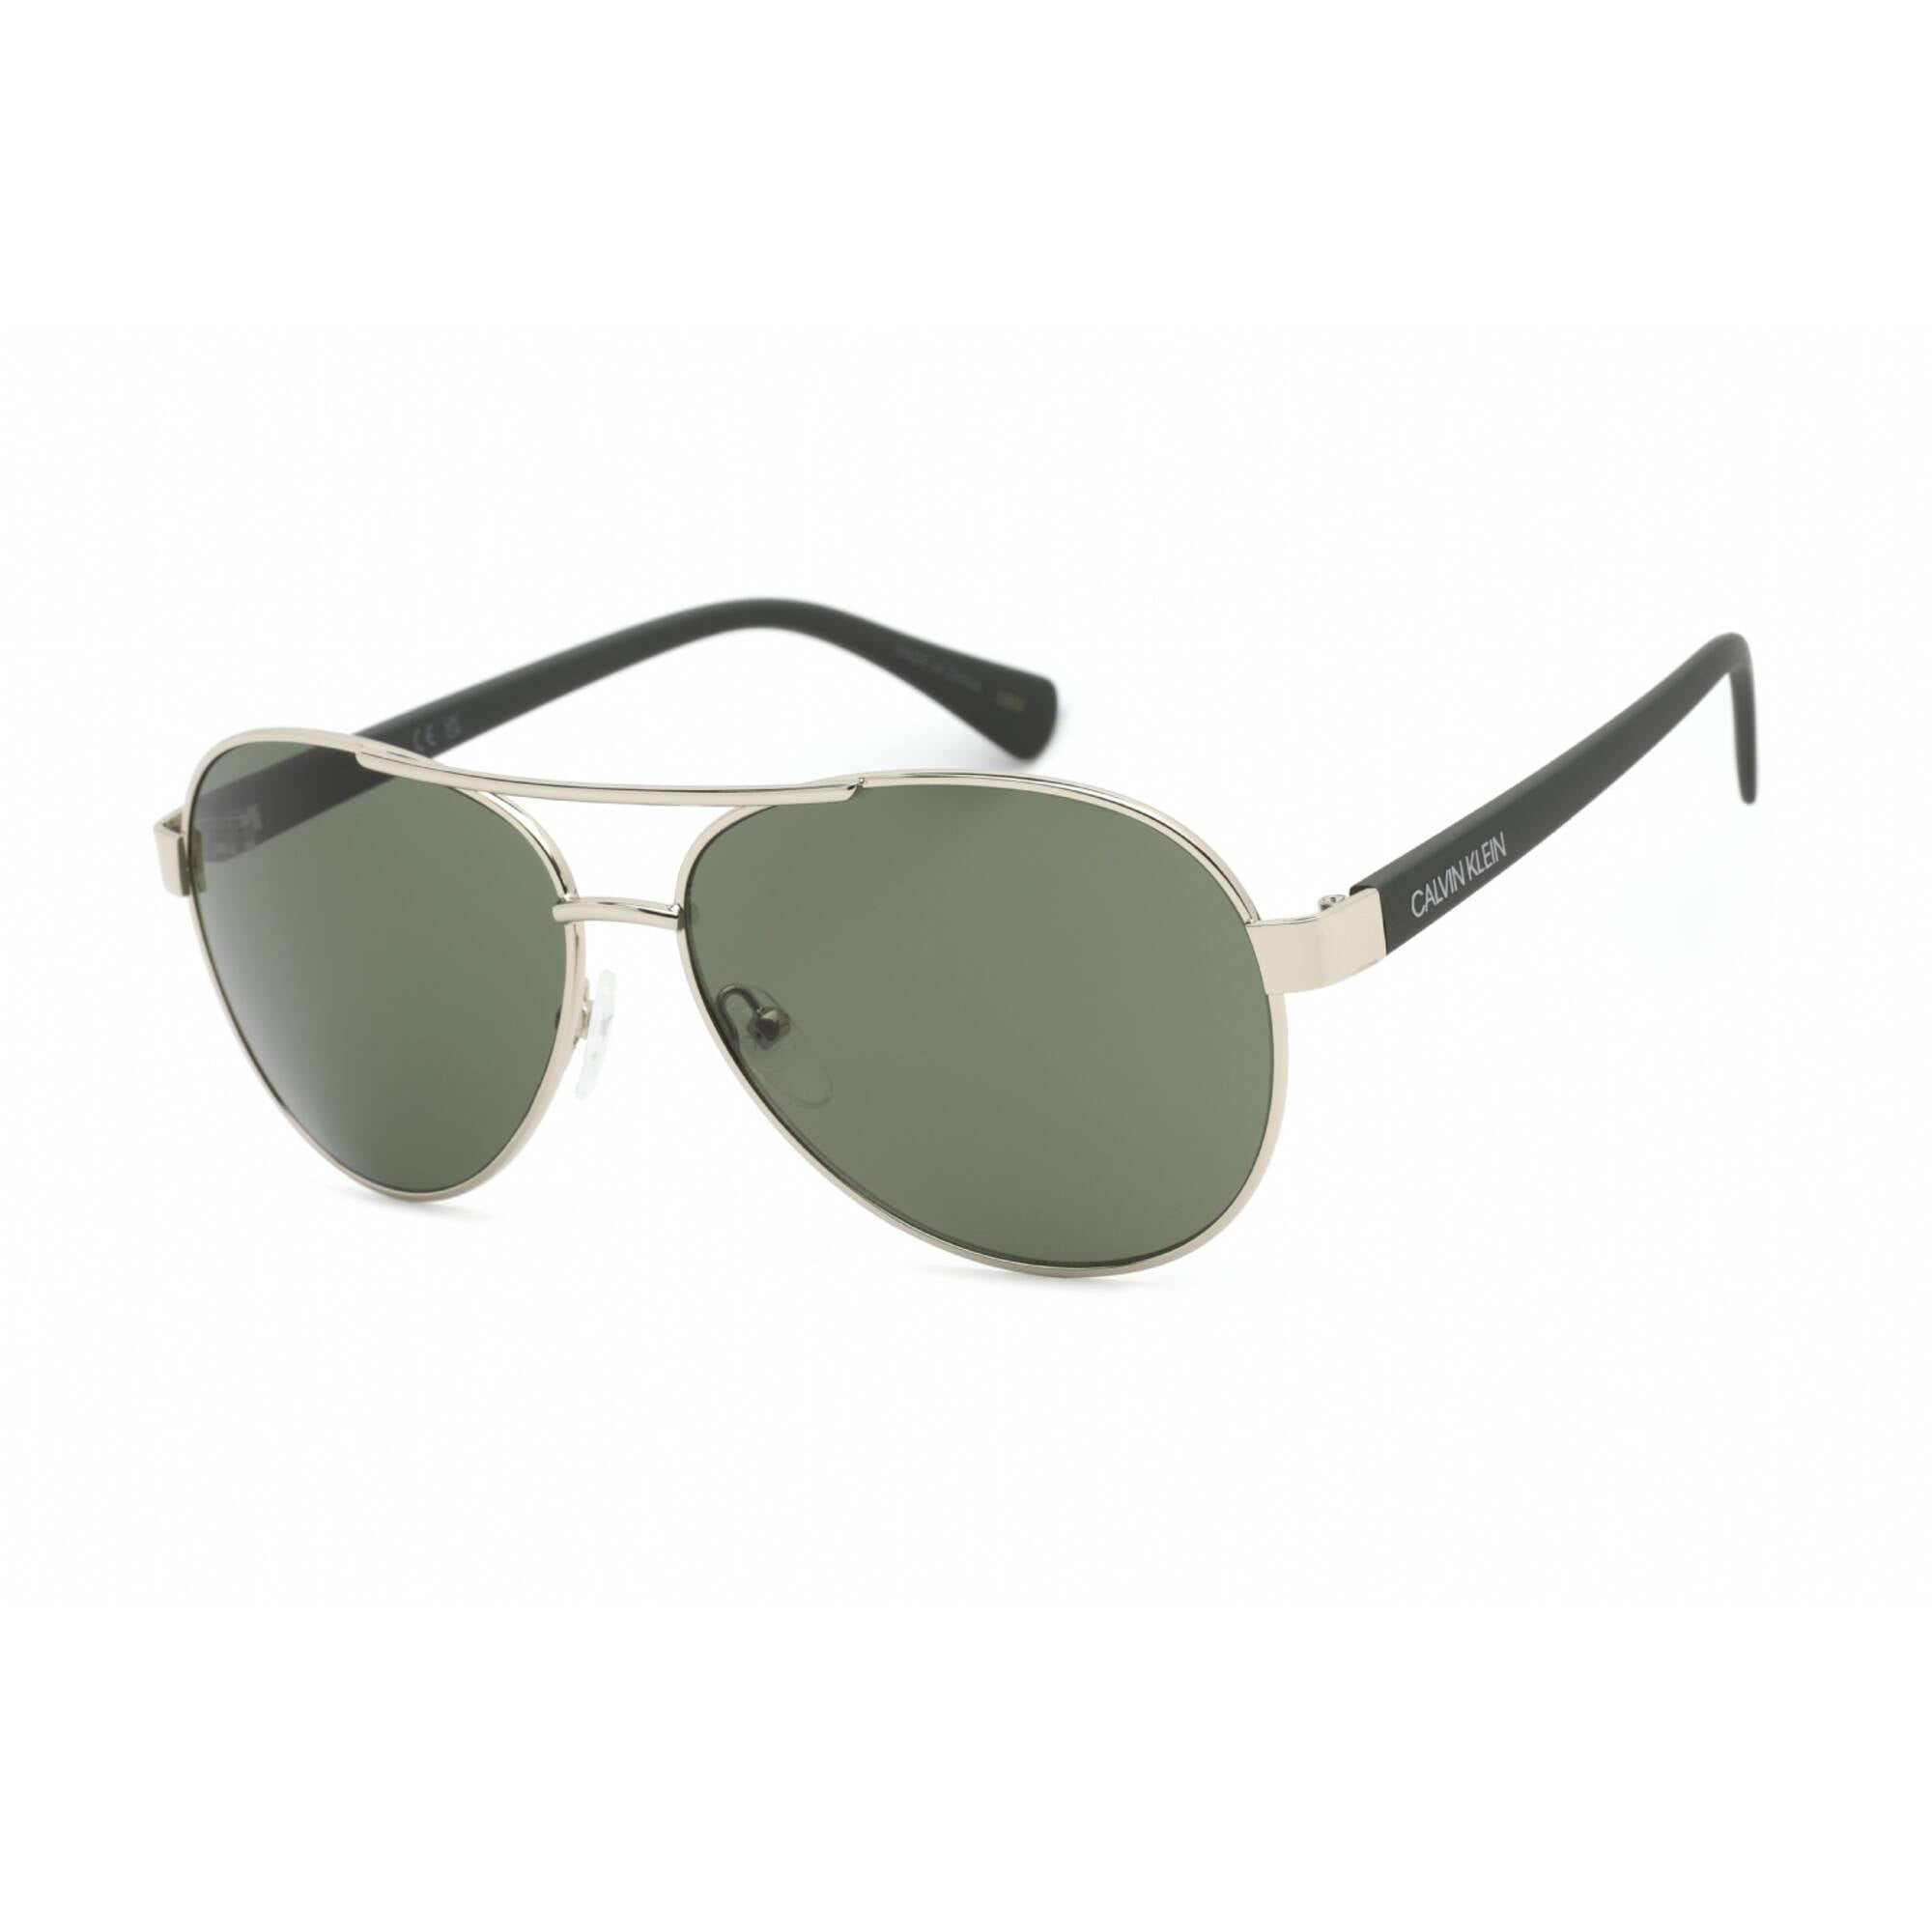 Vtg. Womens Calvin Klein Sunglasses W/Tags CK 4011 73 51-17-140 Green Gold